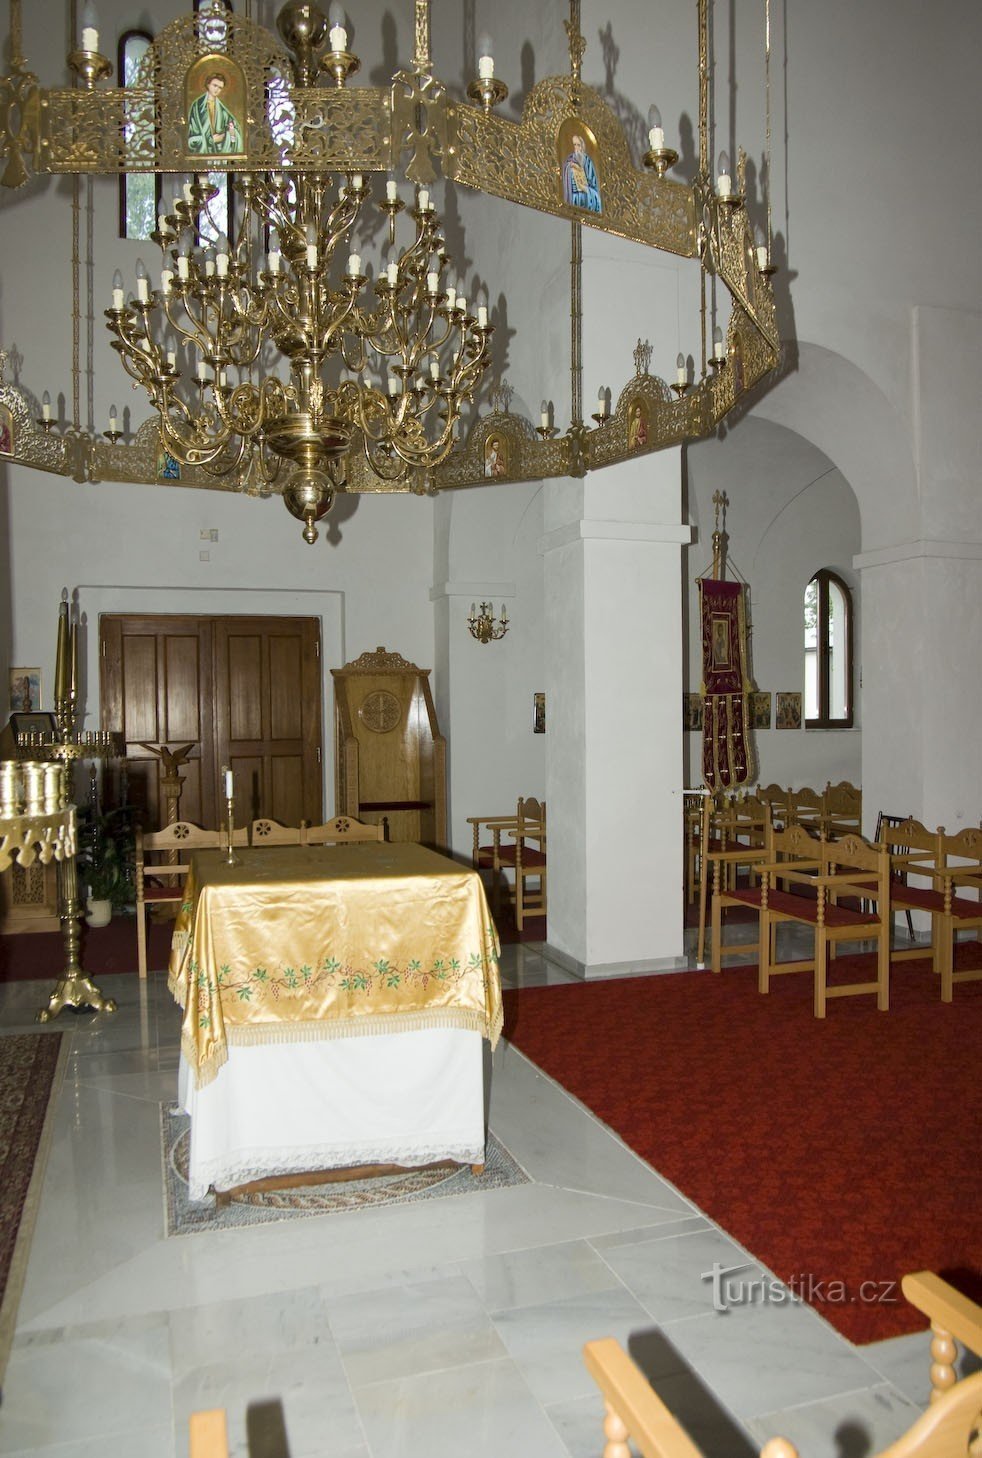 Šumperk - iglesia de St. Espíritu